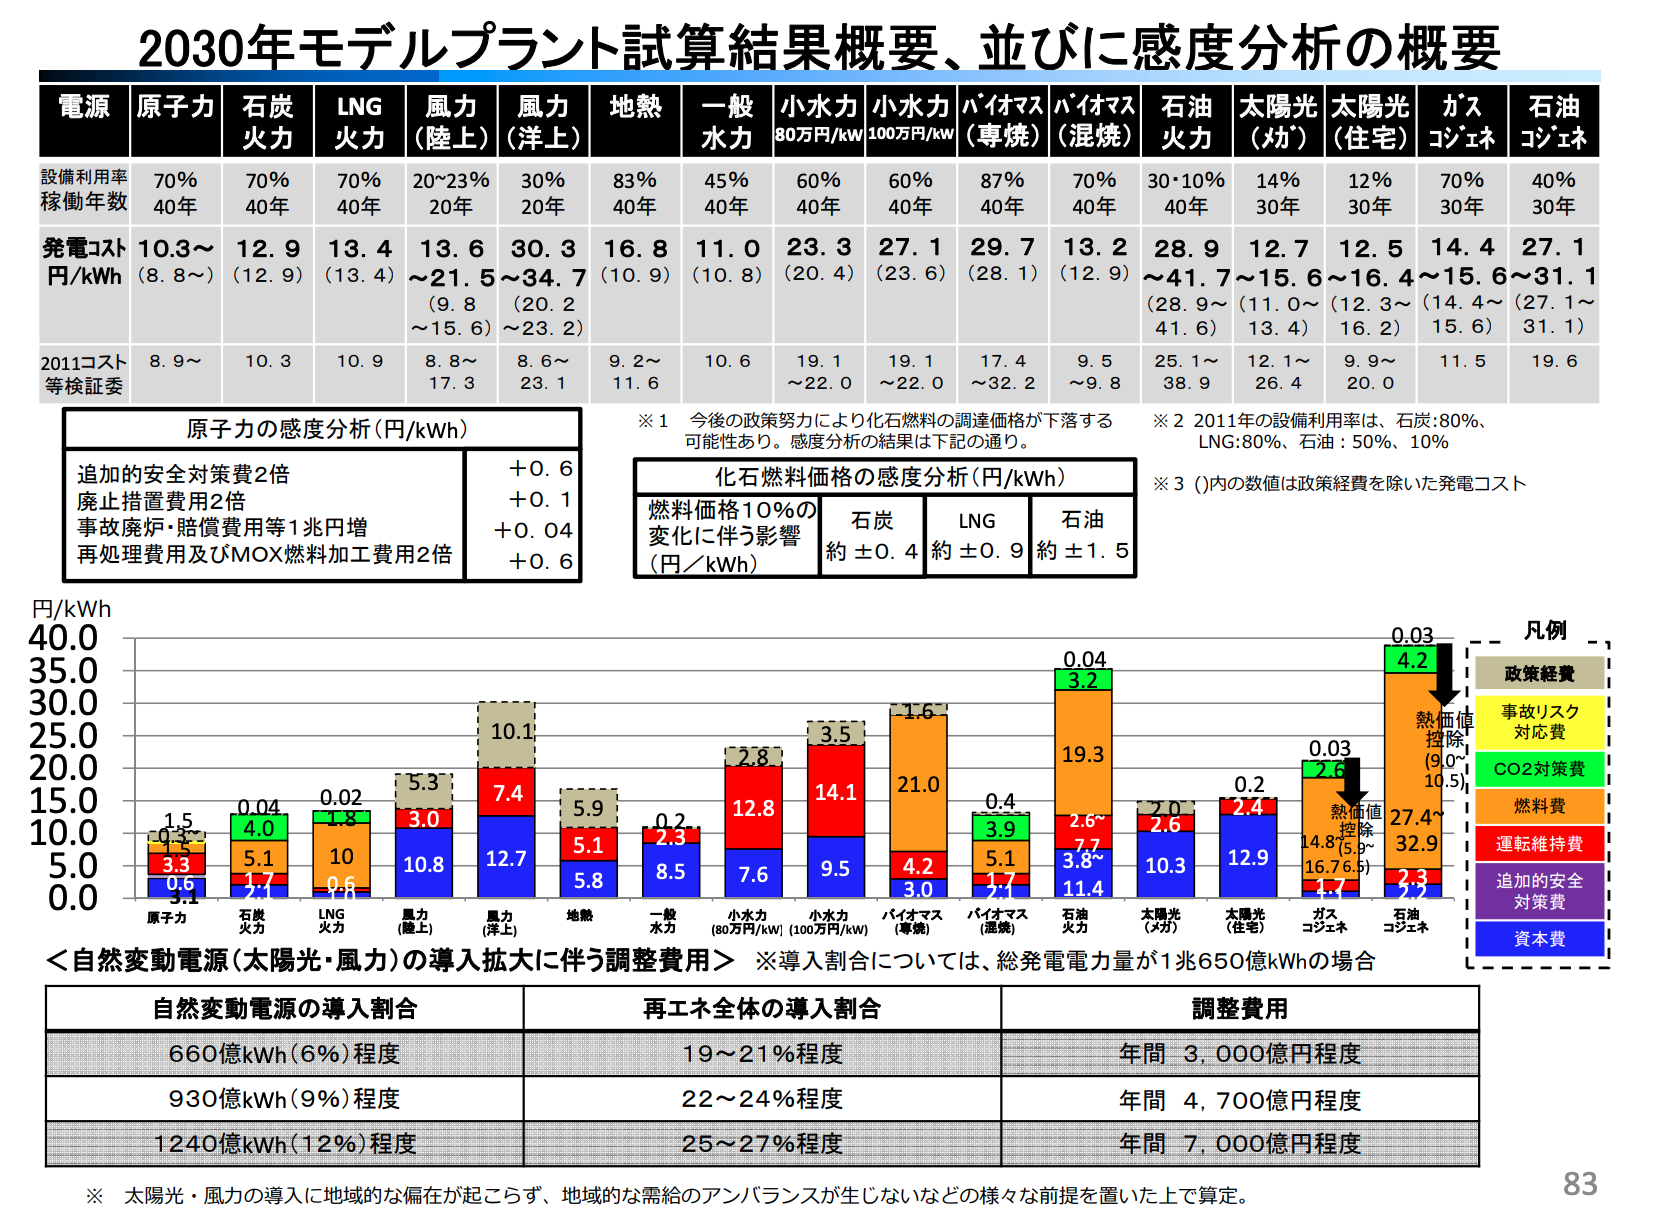 【日本】エネ庁、2030年の発電コスト試算発表。太陽光が最安で原発を下回る。日本初 3